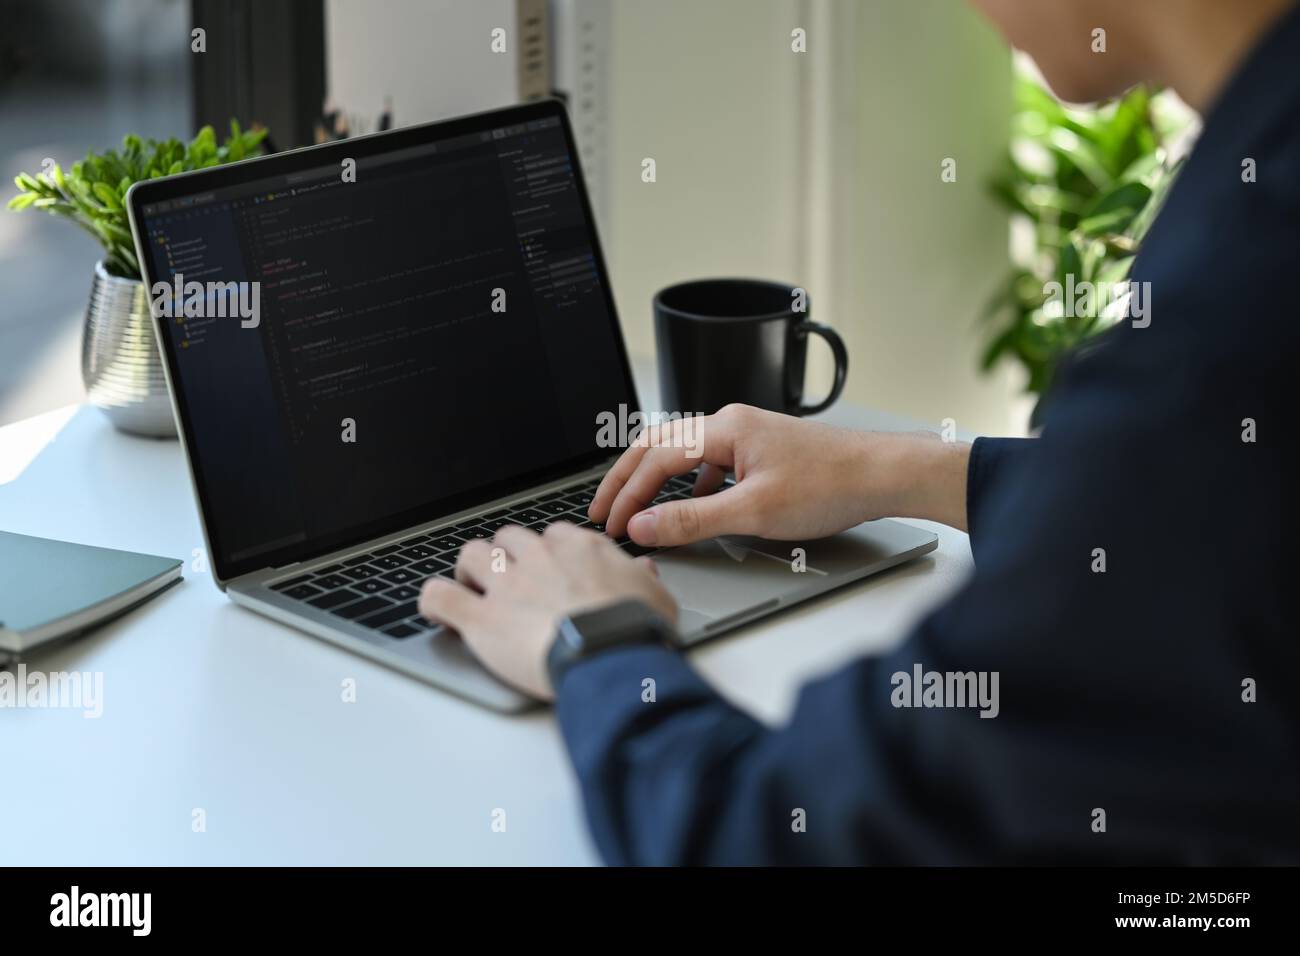 Immagine ritagliata dello sviluppatore IT che digita sul laptop con il codice di programmazione sullo schermo del computer Foto Stock